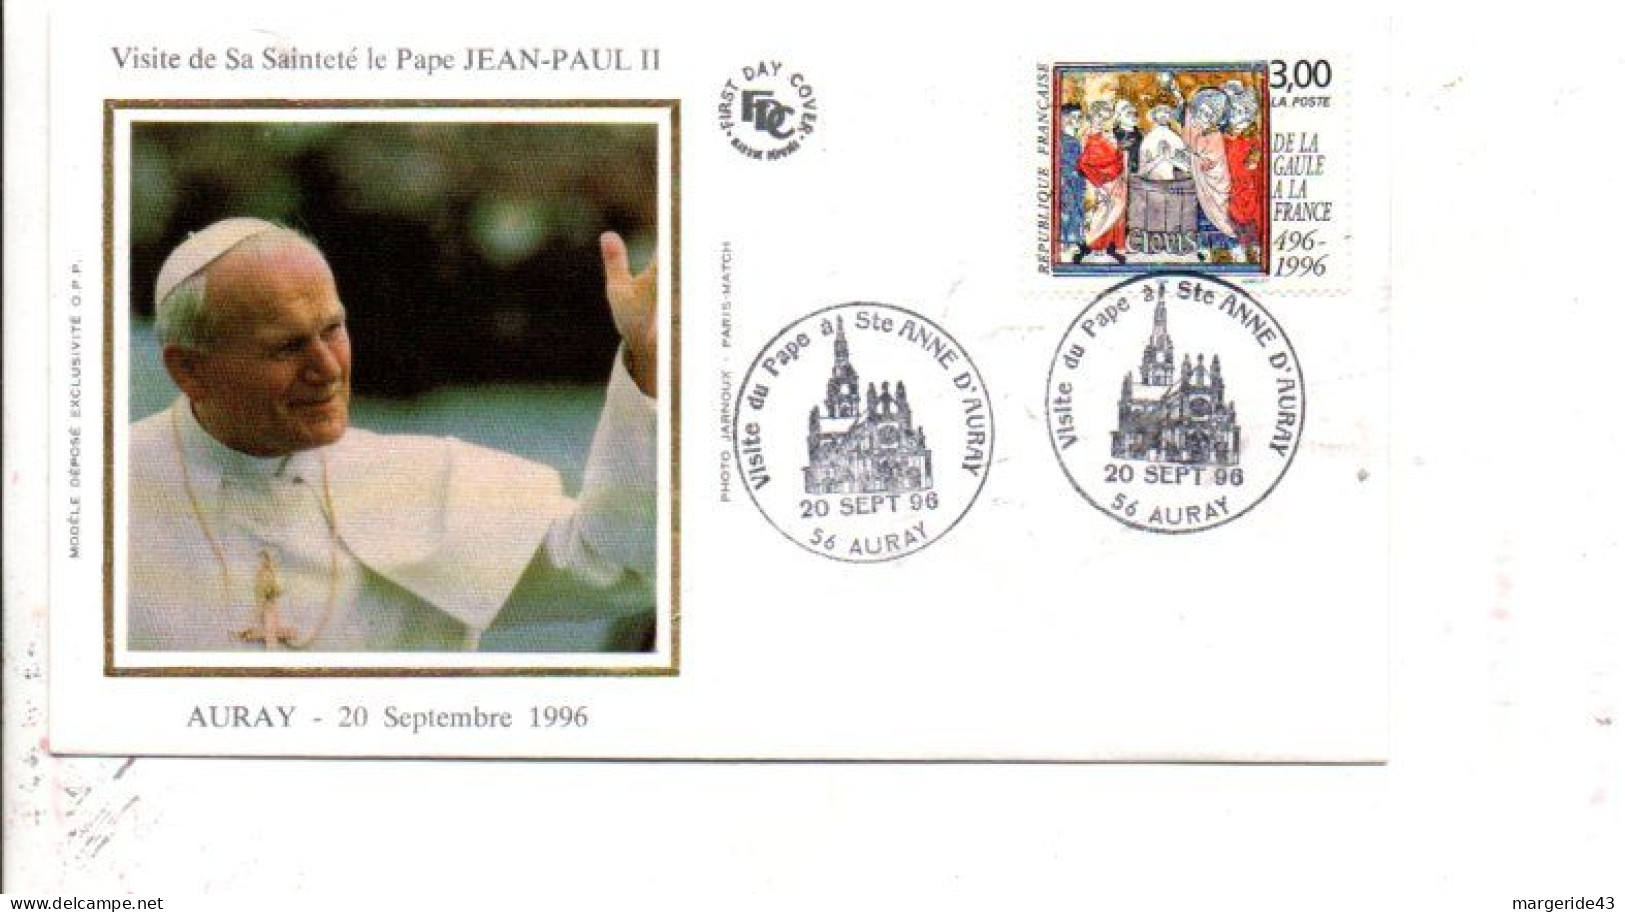 VISITE DU PAPE JEAN PAUL II à AURAY 1996 - Commemorative Postmarks